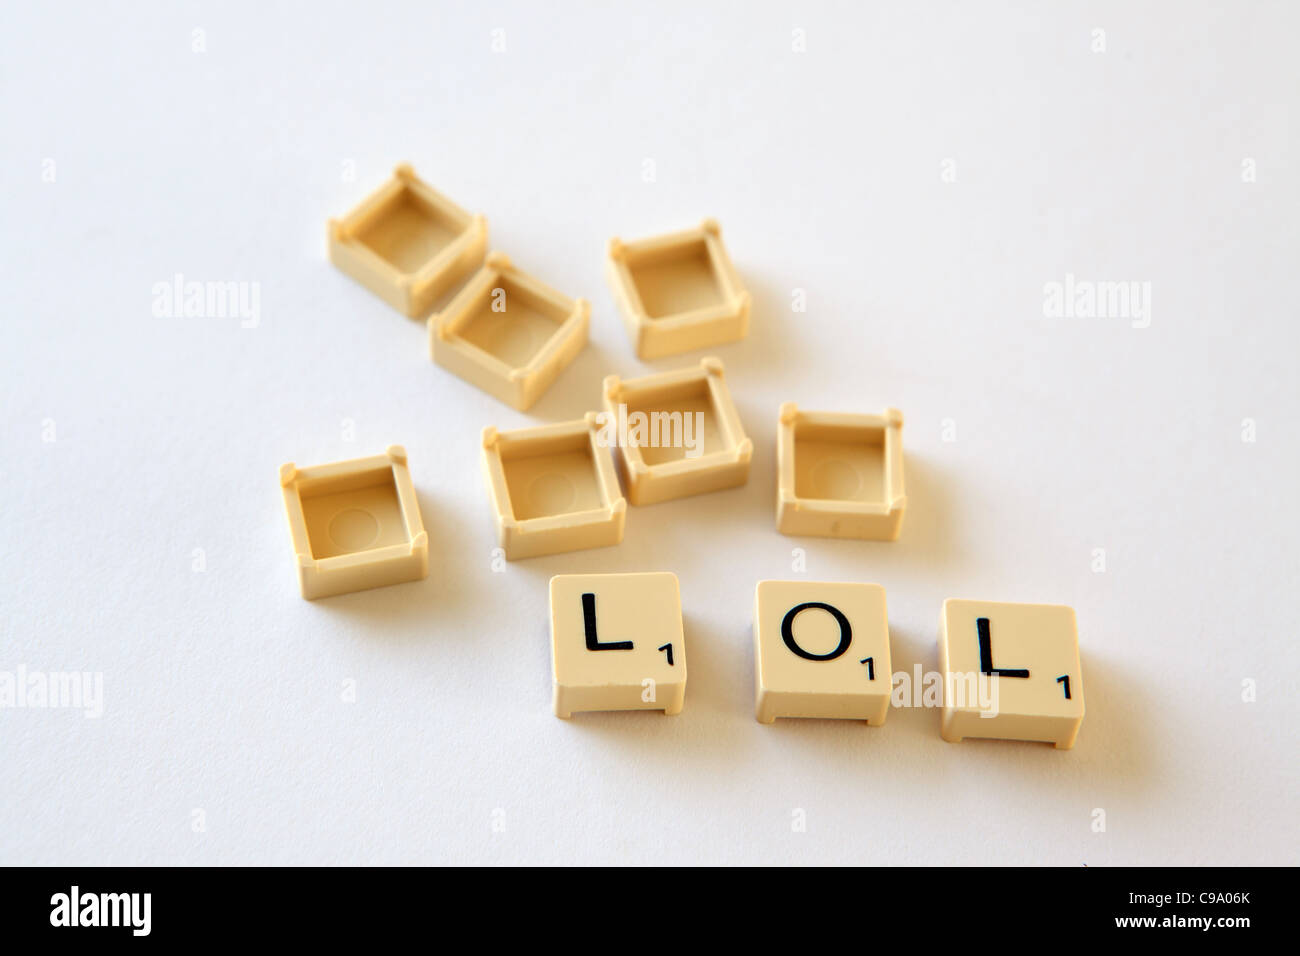 Piastrelle Scrabble / piazze compitare , sfondo bianco studio fotografico Foto Stock